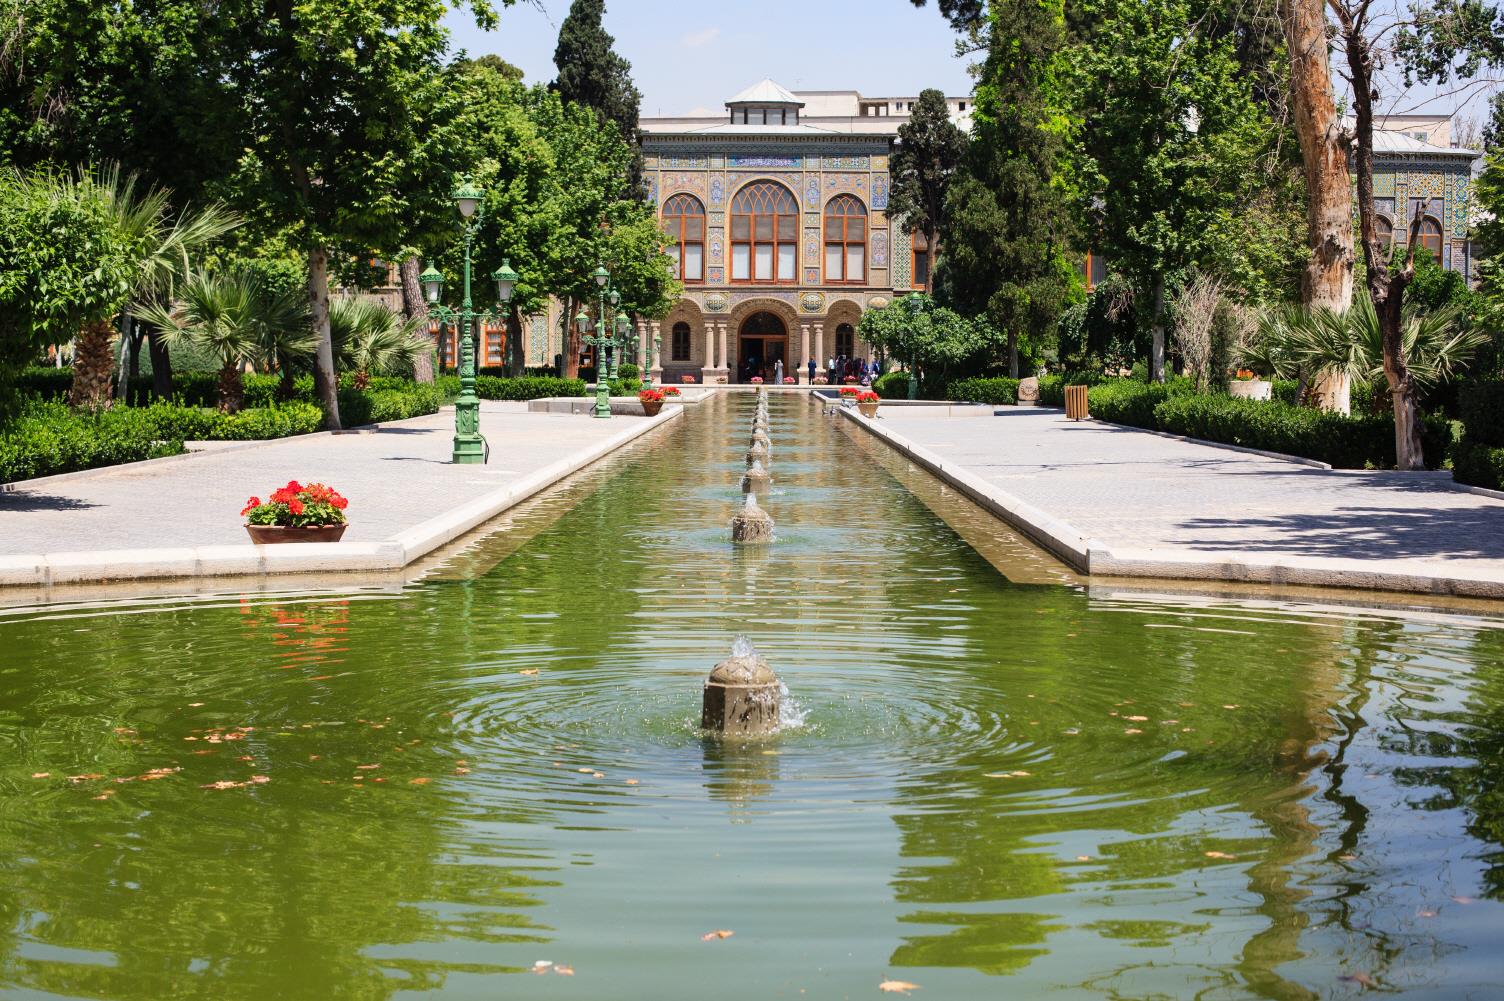 골레스탄 궁전  Golestan Palace